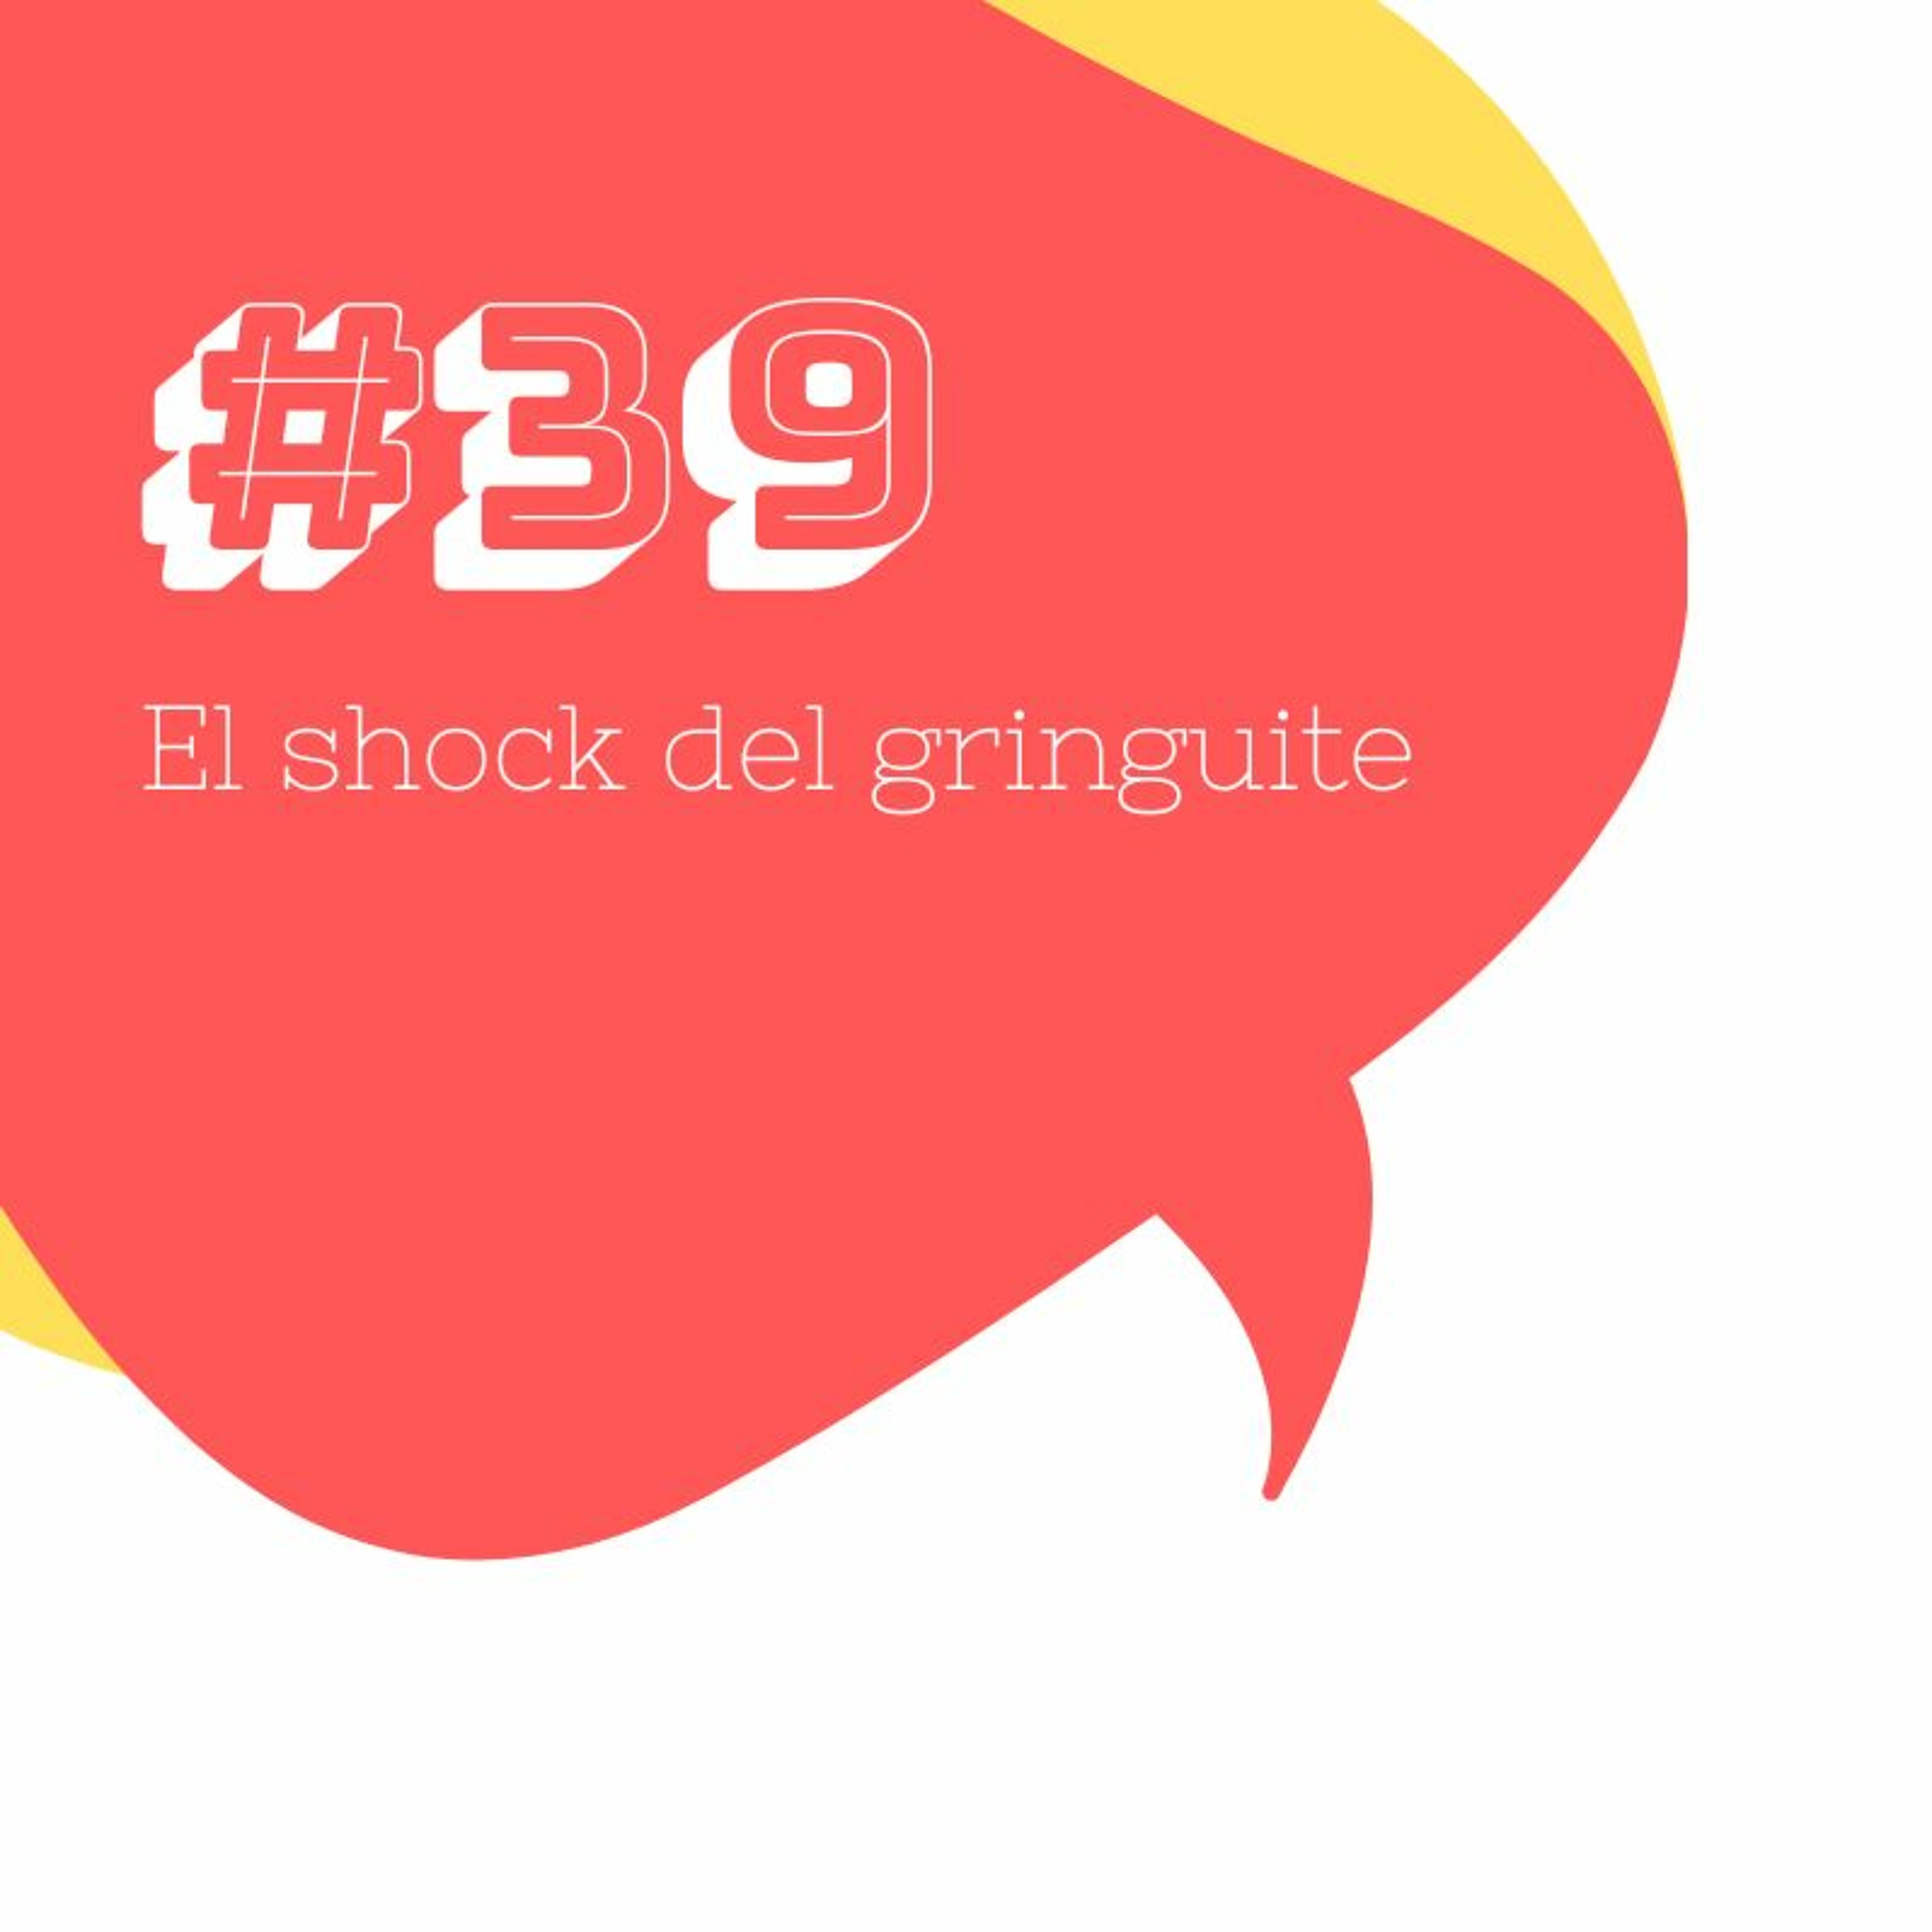 #39 El shock del gruinguite